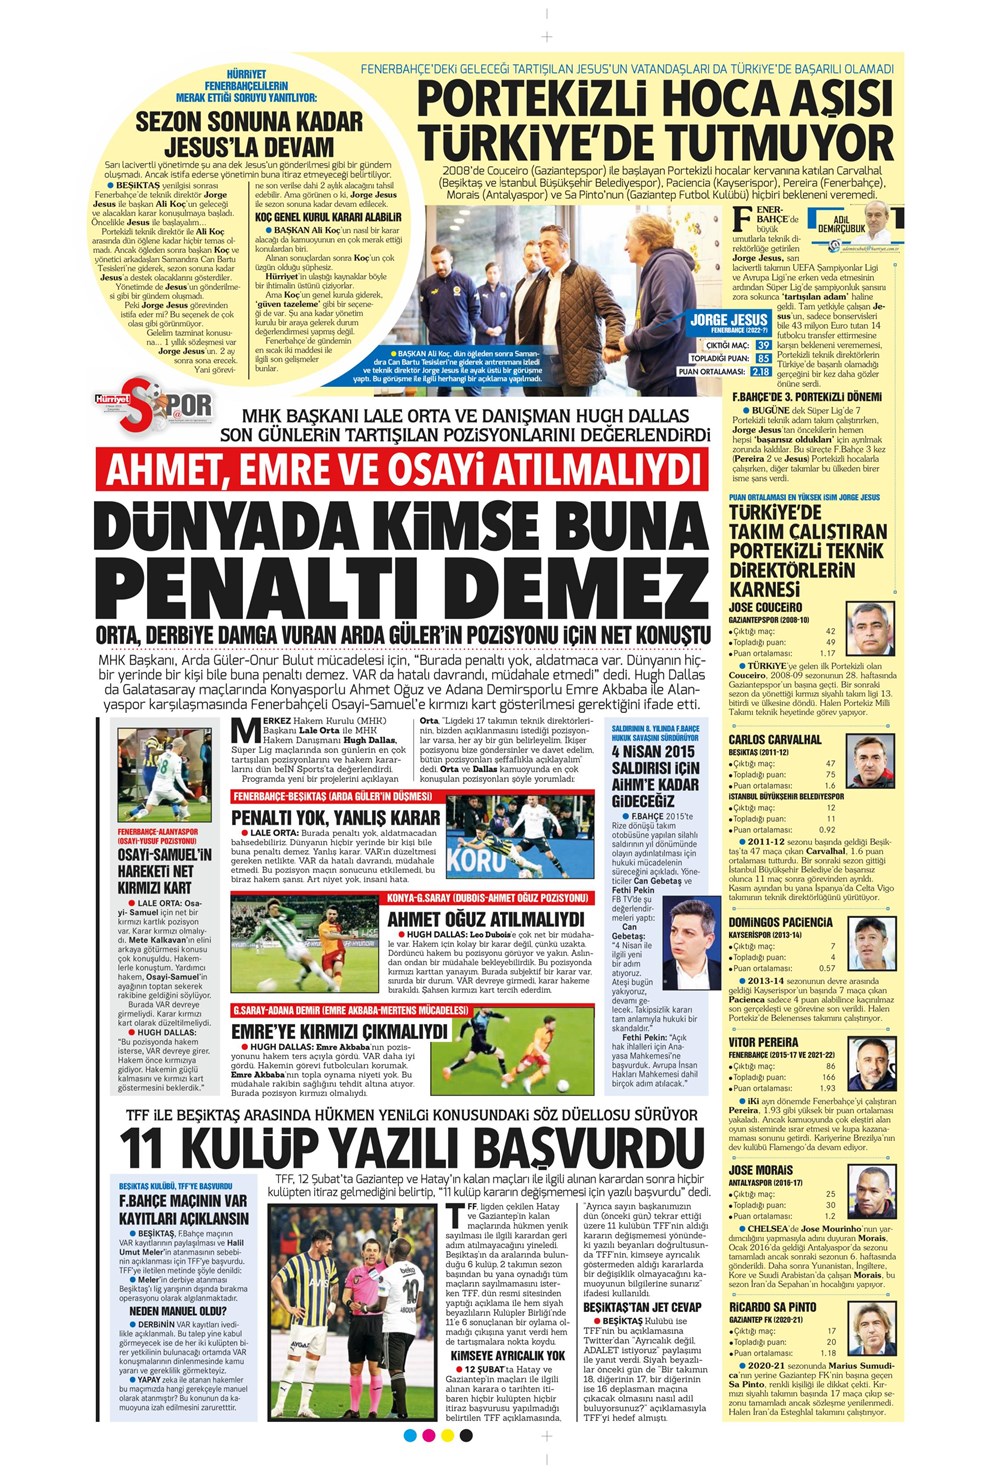 "Dünyada kimse buna penaltı demez" - Sporun manşetleri (5 Nisan 2023)  - 19. Foto